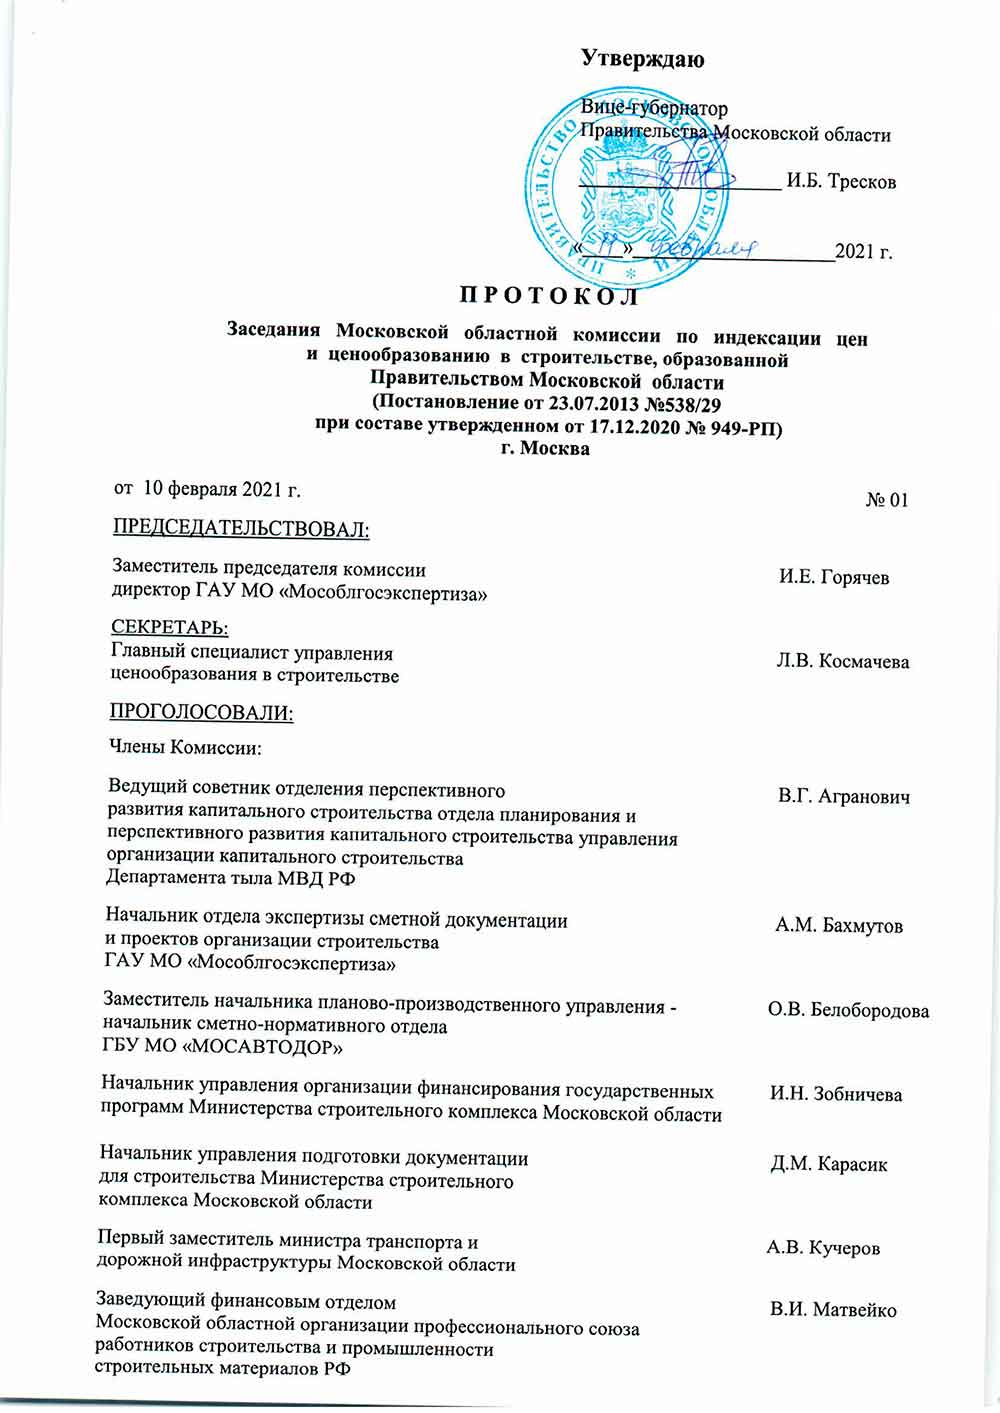 Протокол Мособлгосэкспертизы №01 от 10.02.2021 года